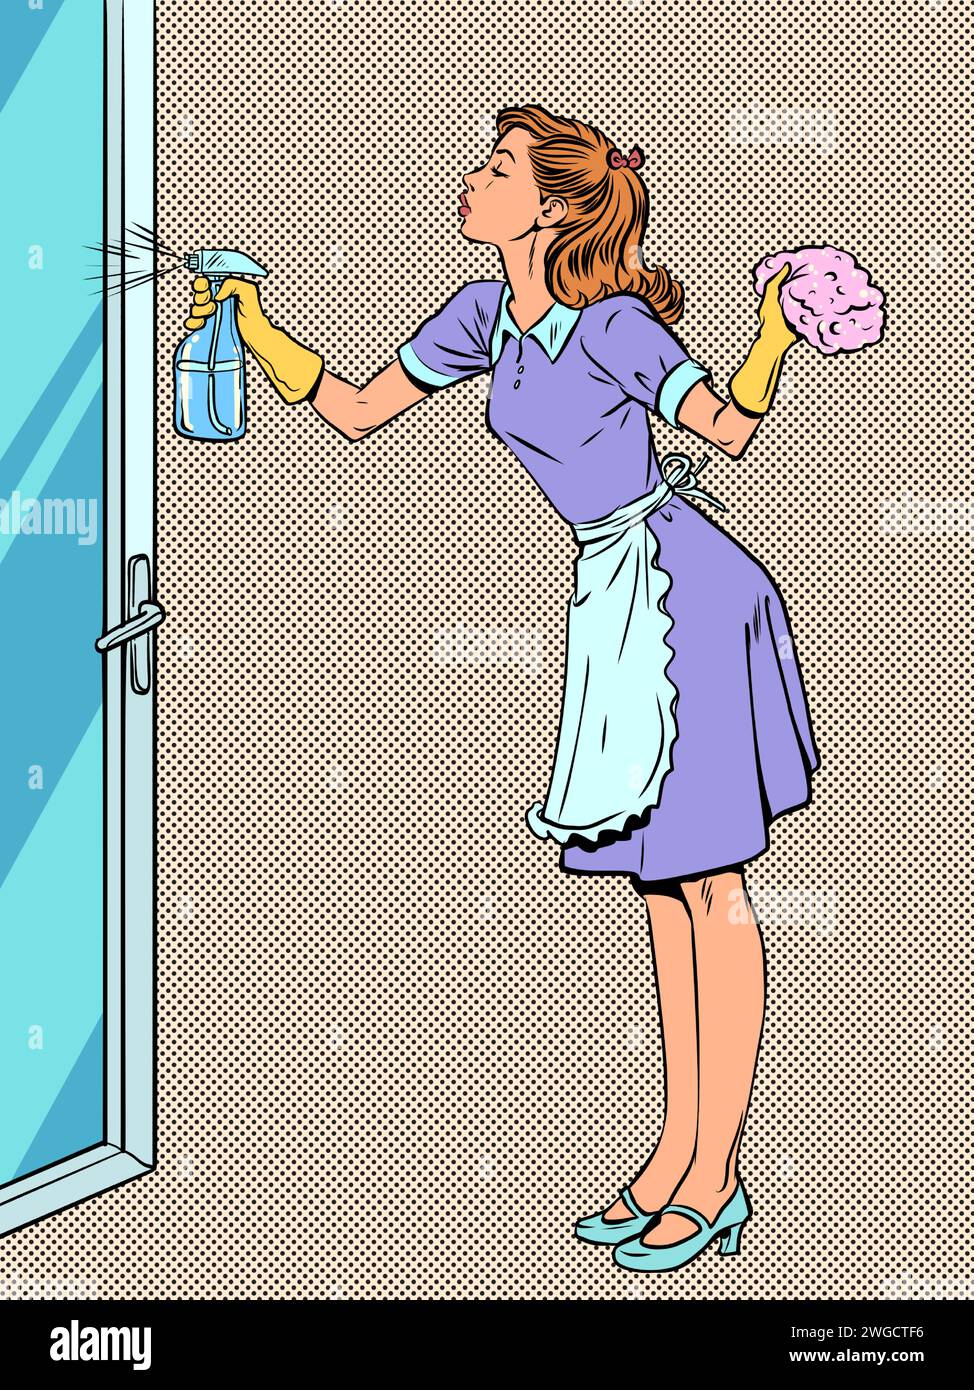 Reinigungsservice für die Reinigung Ihres Hauses. Die verantwortliche Hausfrau reinigt das Haus. Ein Mädchen in Uniform wäscht eine Glastür. Comic-Comic-Pop-Art-Rev Stock Vektor